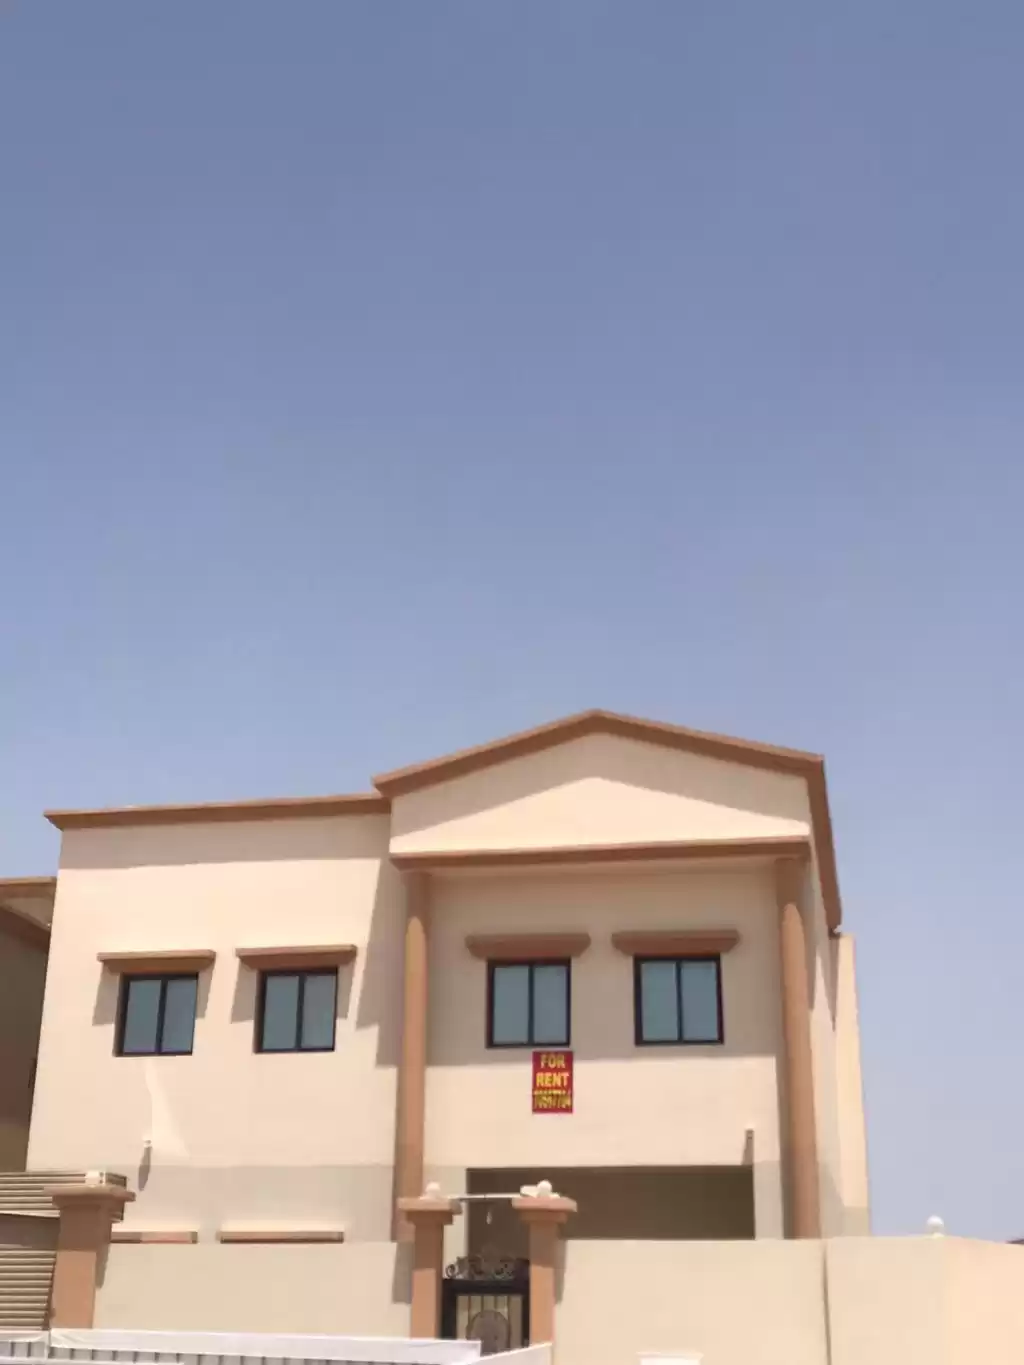 Résidentiel Propriété prête 7 chambres U / f Villa autonome  a louer au Al-Sadd , Doha #13050 - 1  image 